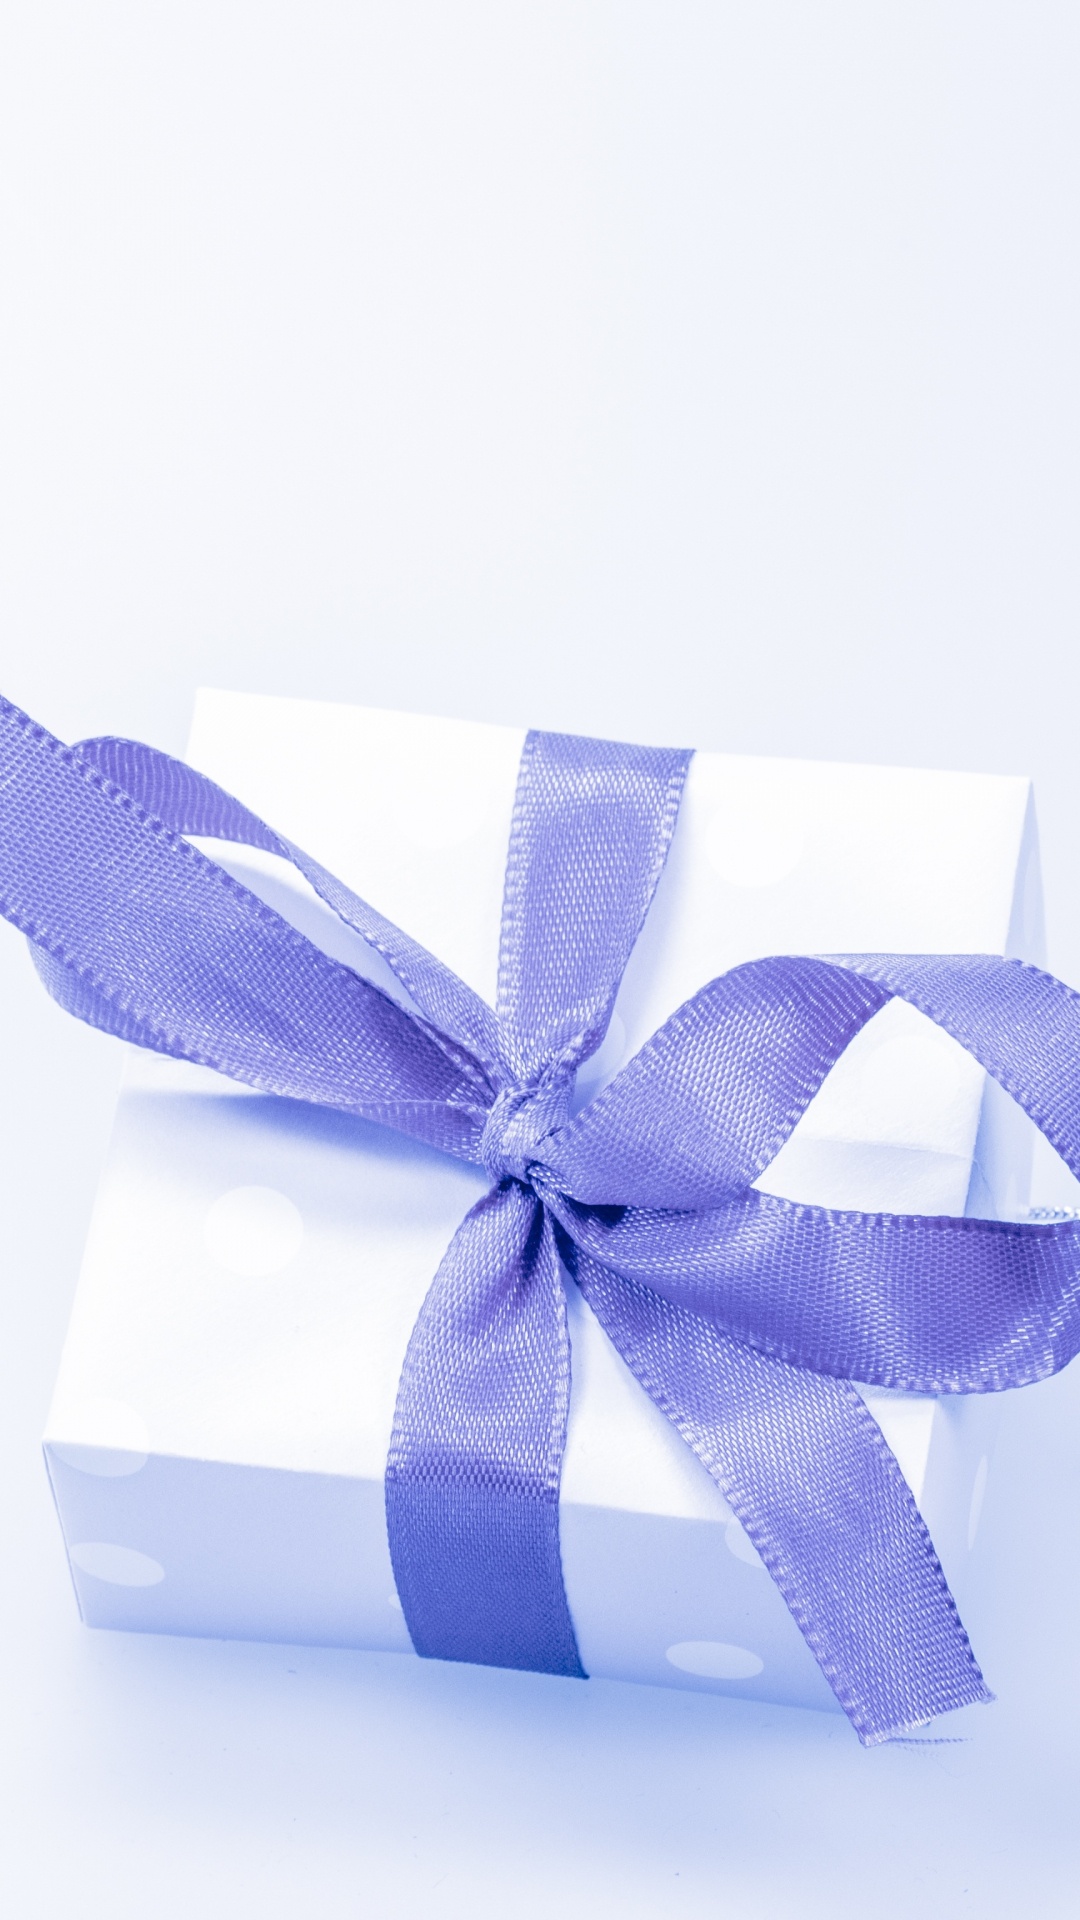 Geschenk, Geschenkkarte, Geschenkpapier, Multifunktionsleiste, Blau. Wallpaper in 1080x1920 Resolution